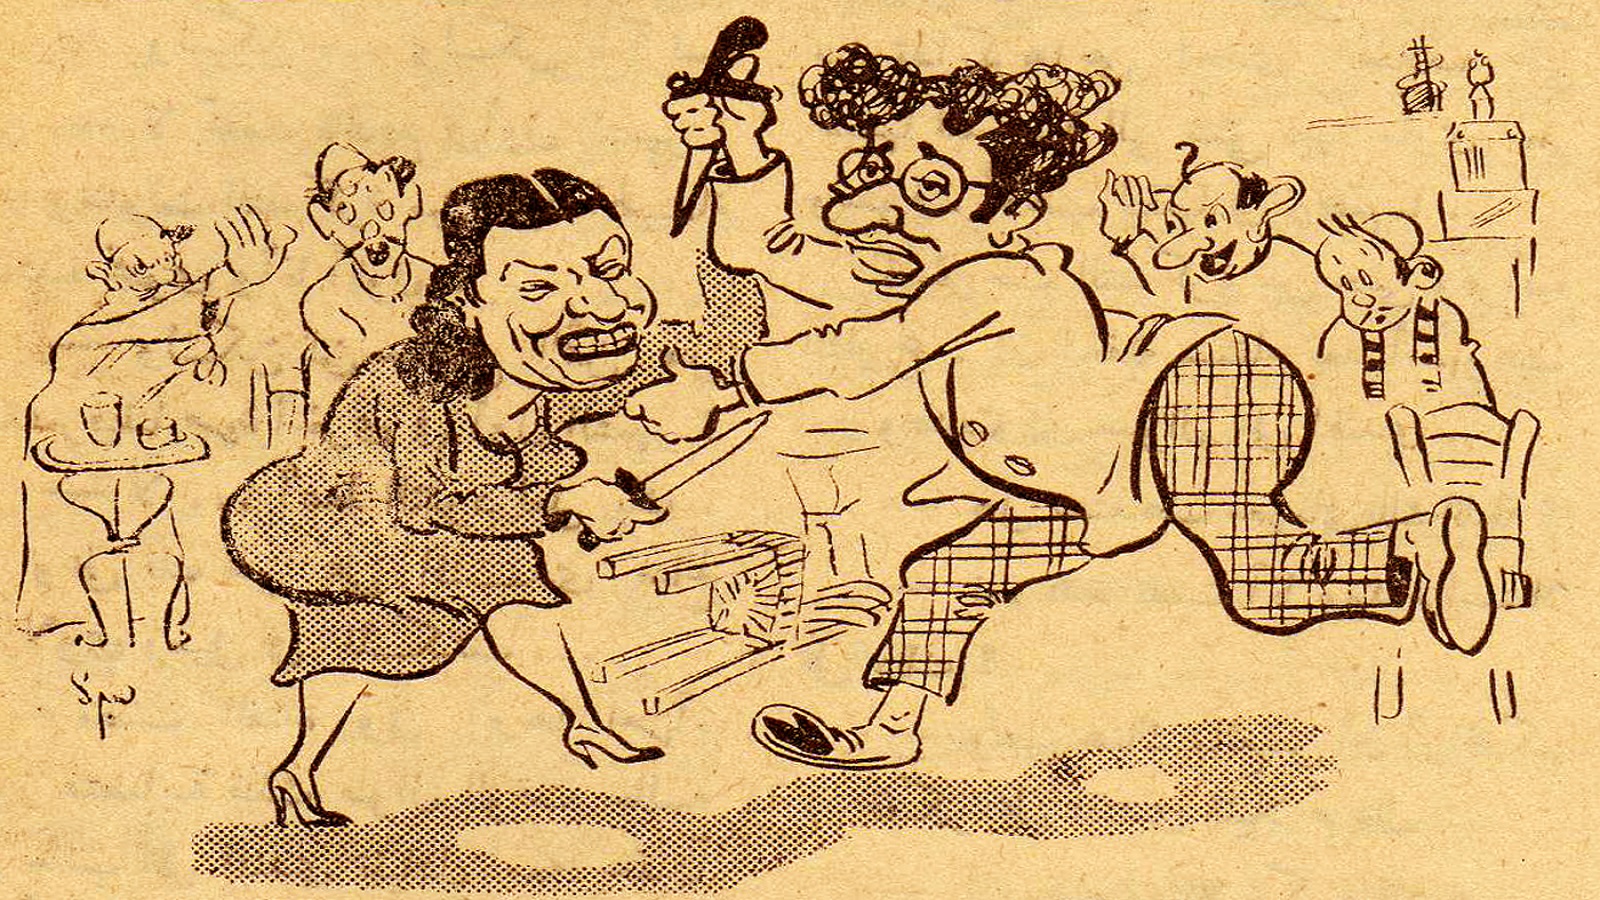  الصراع الدائم، 1947